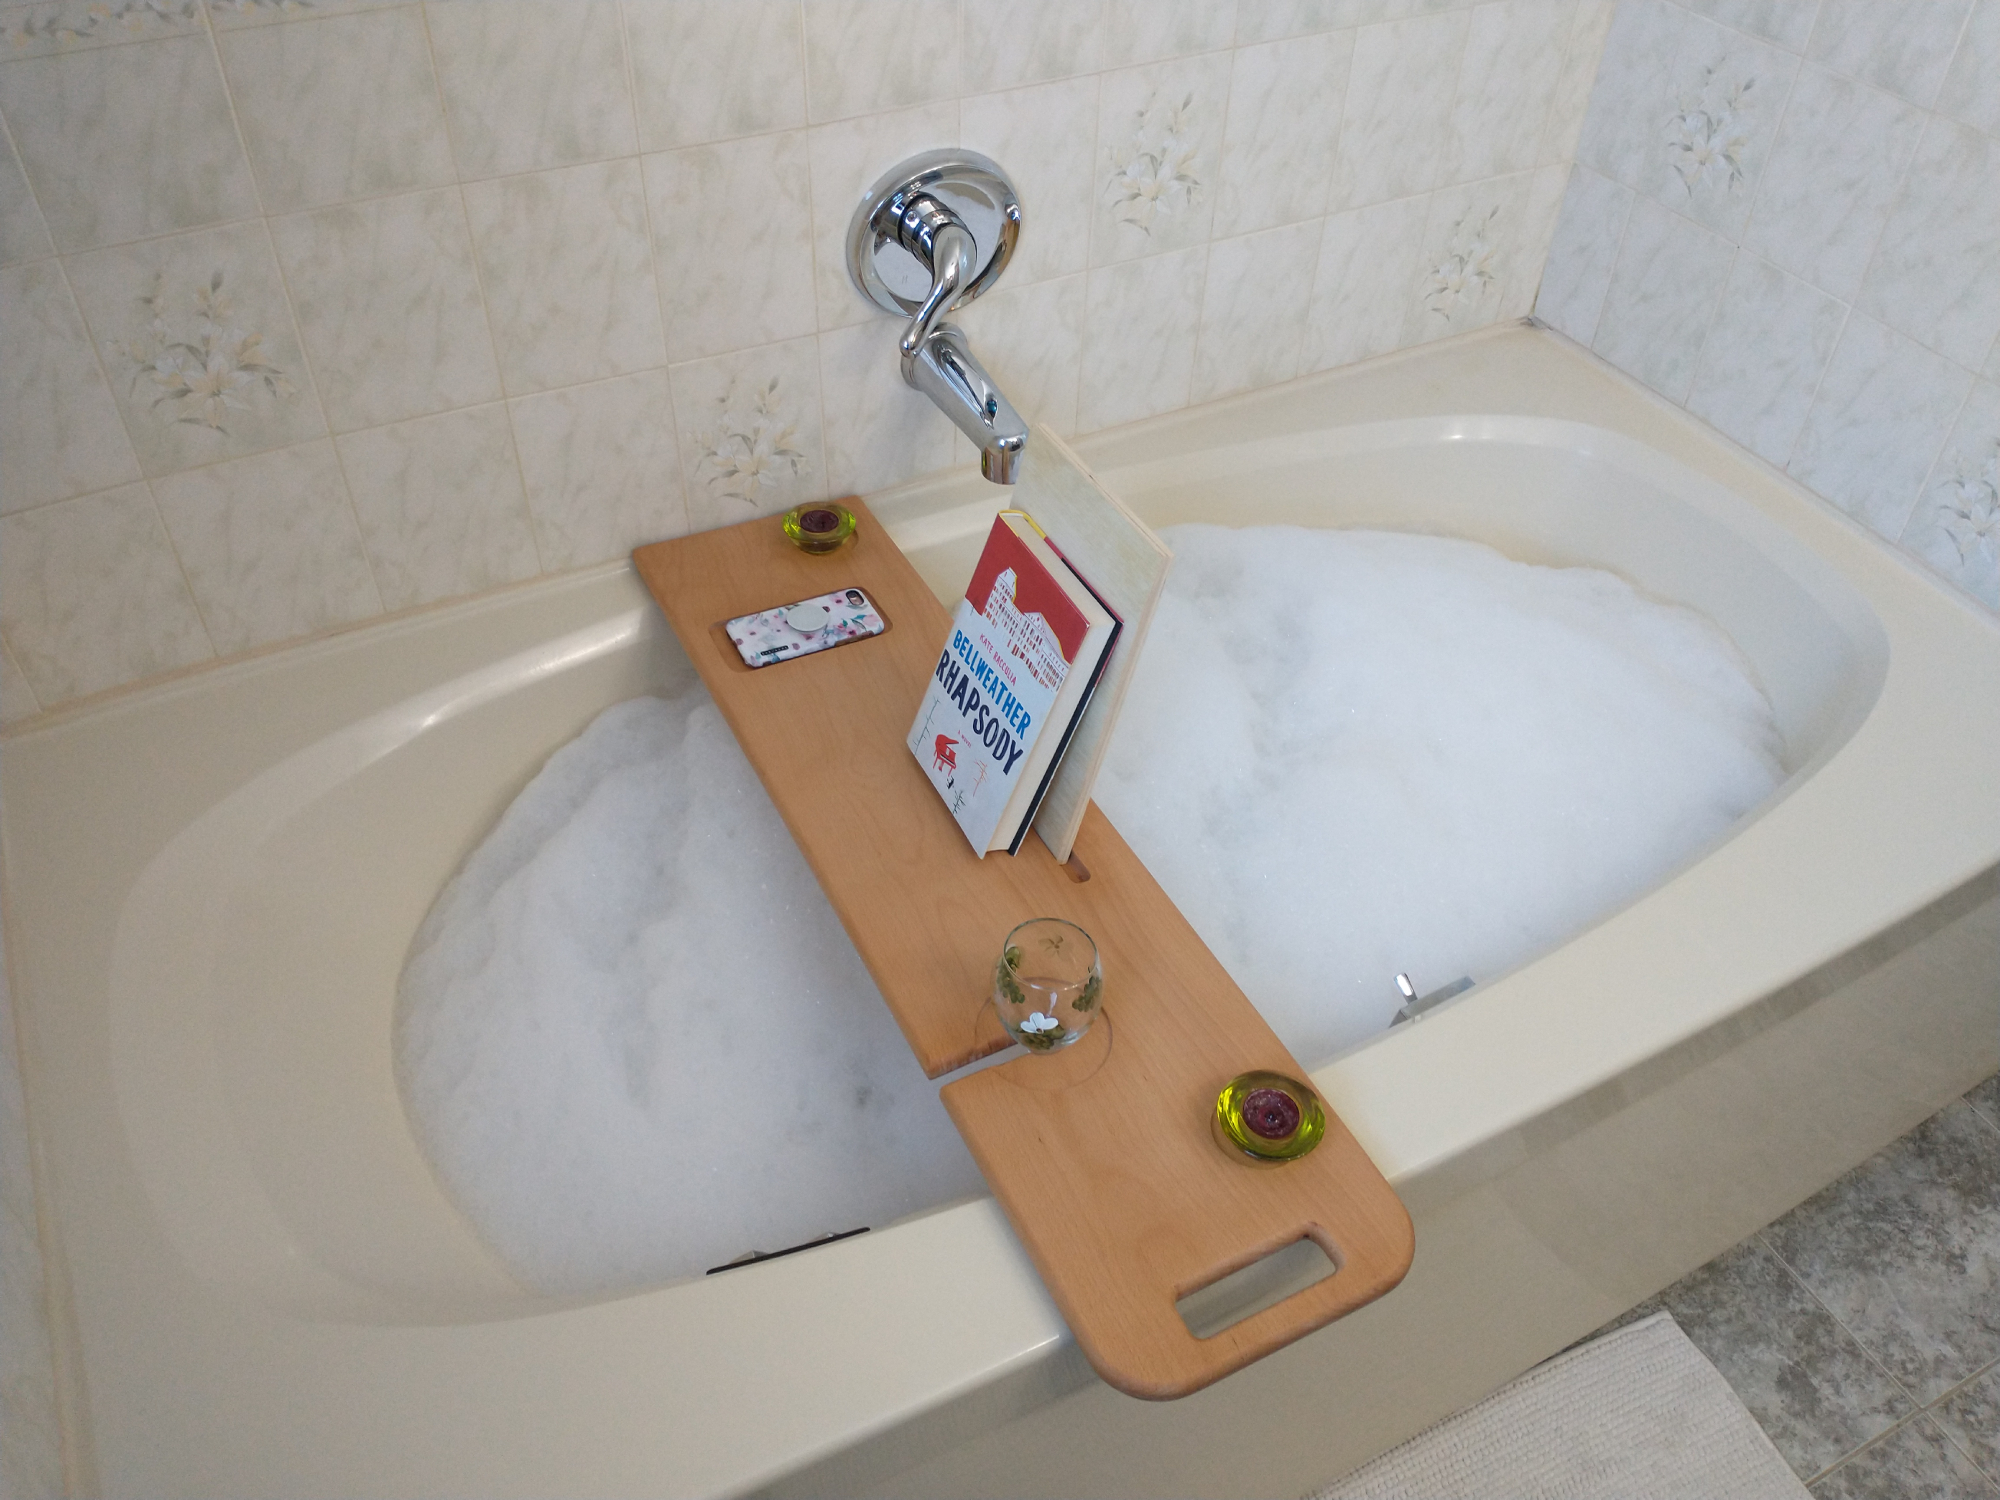 DIY Wood Stain Bath Caddy